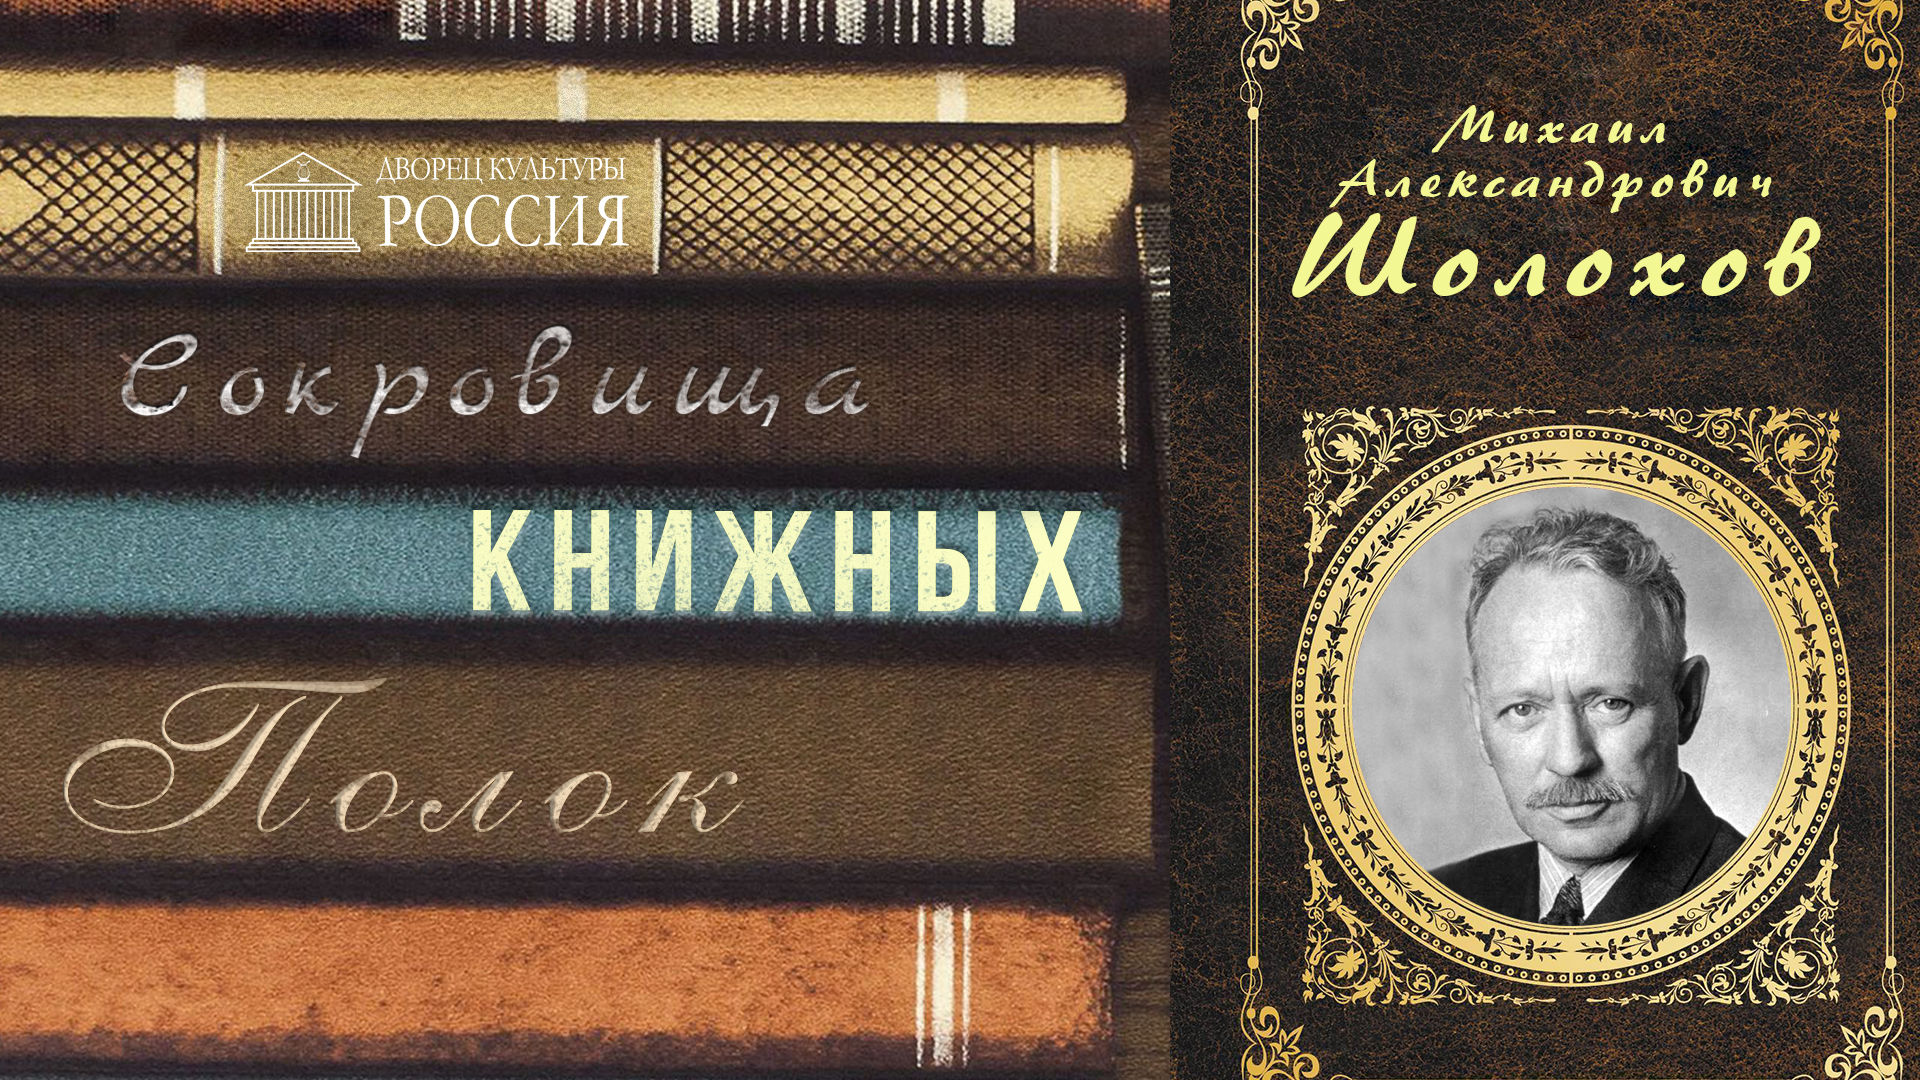 Онлайн-рубрика «Сокровища книжных полок» — «Михаил Шолохов»